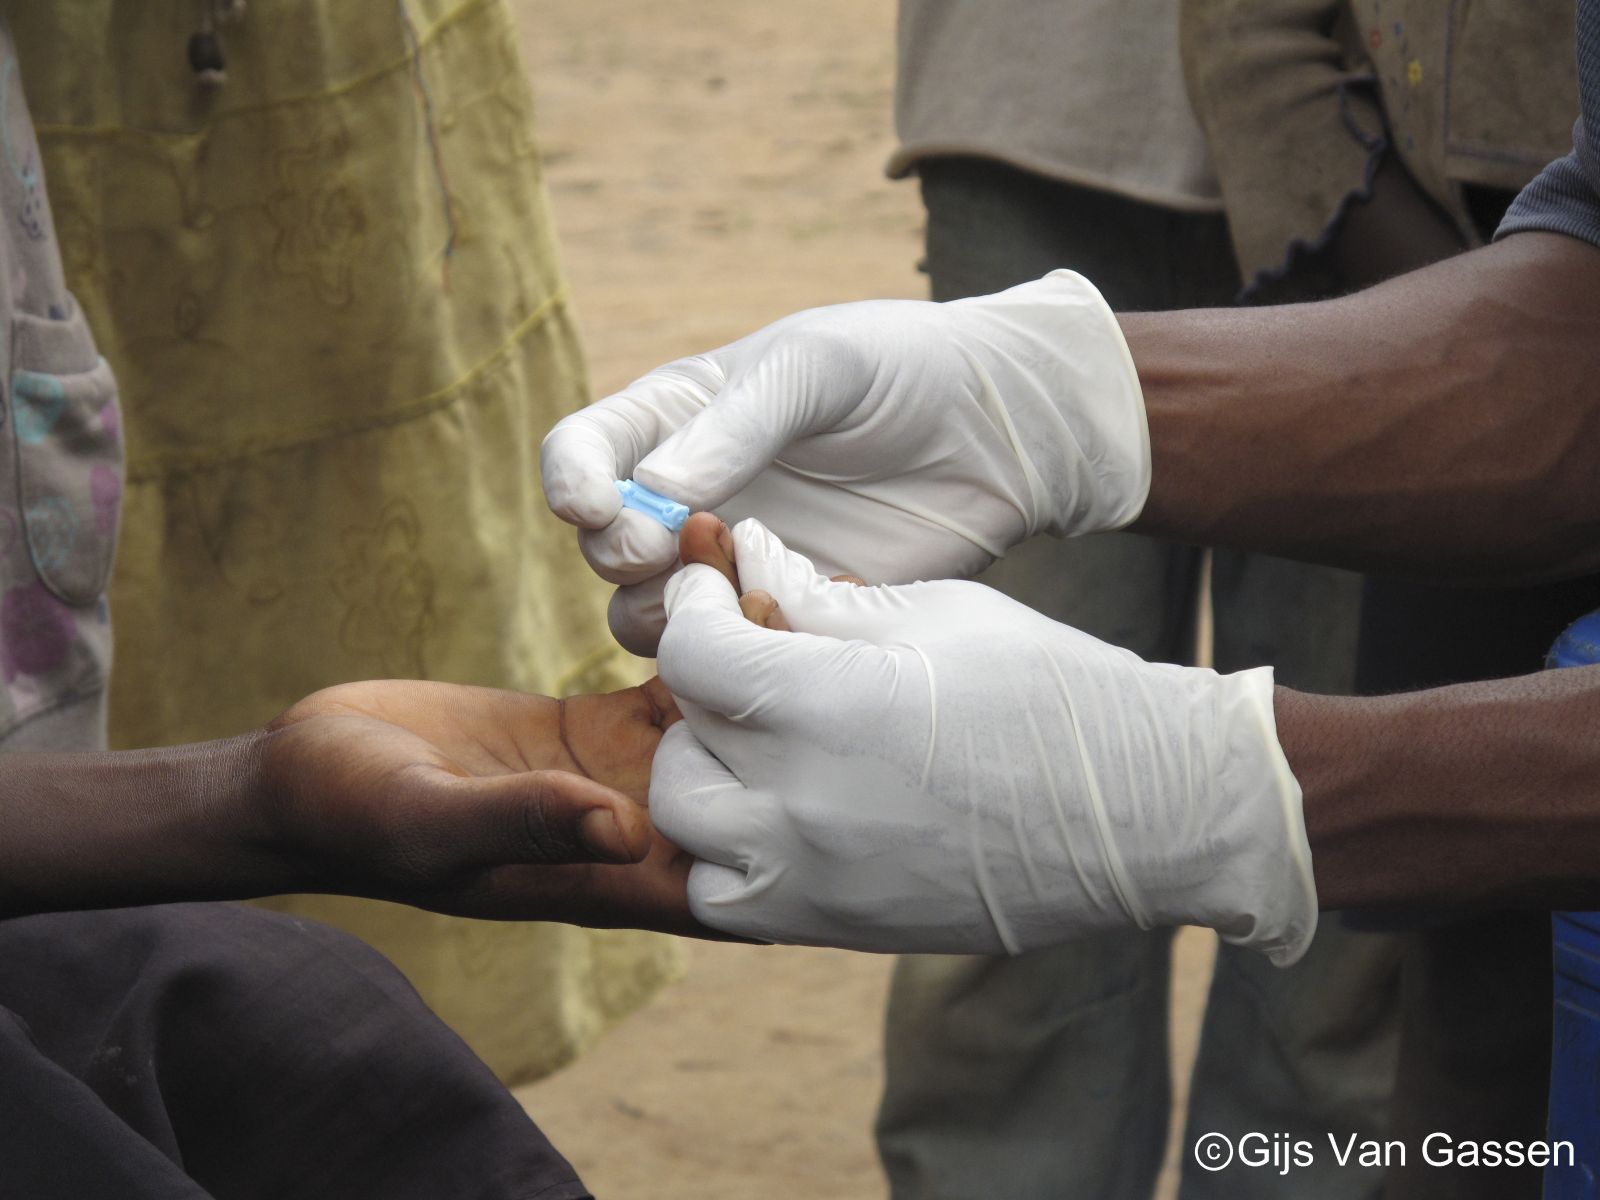 손 끝에서 피를 채혈하는 간단한 방법으로 말라리아를 신속하게 진단하고 있다.